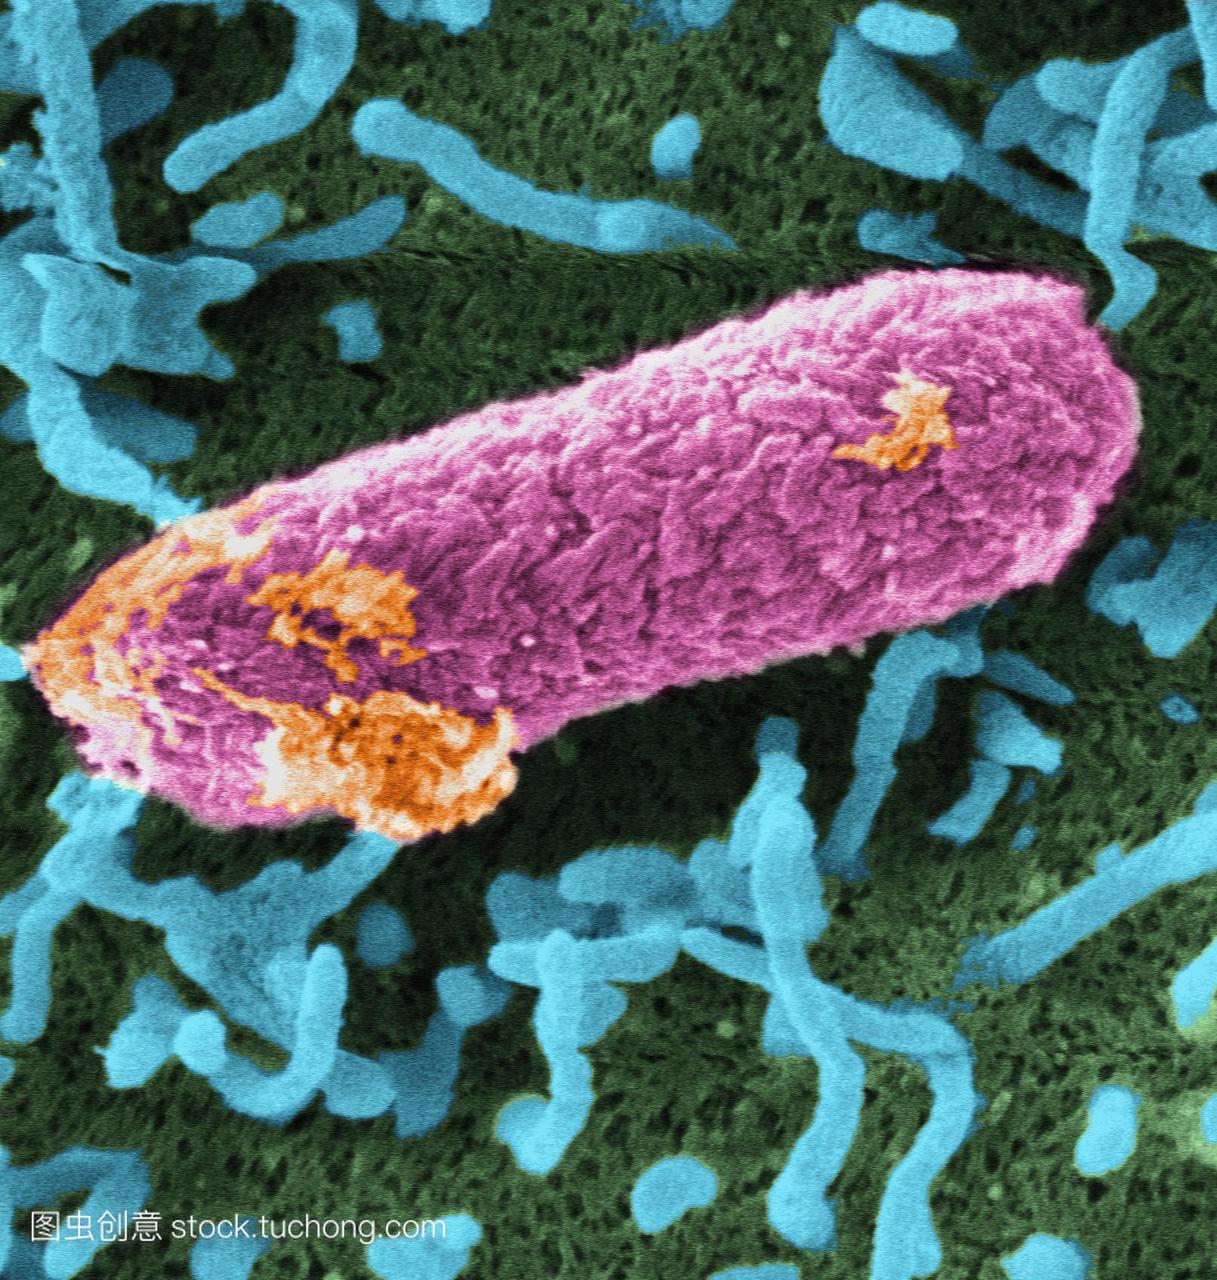 菌h15707细菌的彩色扫描电子显微镜sem,是食